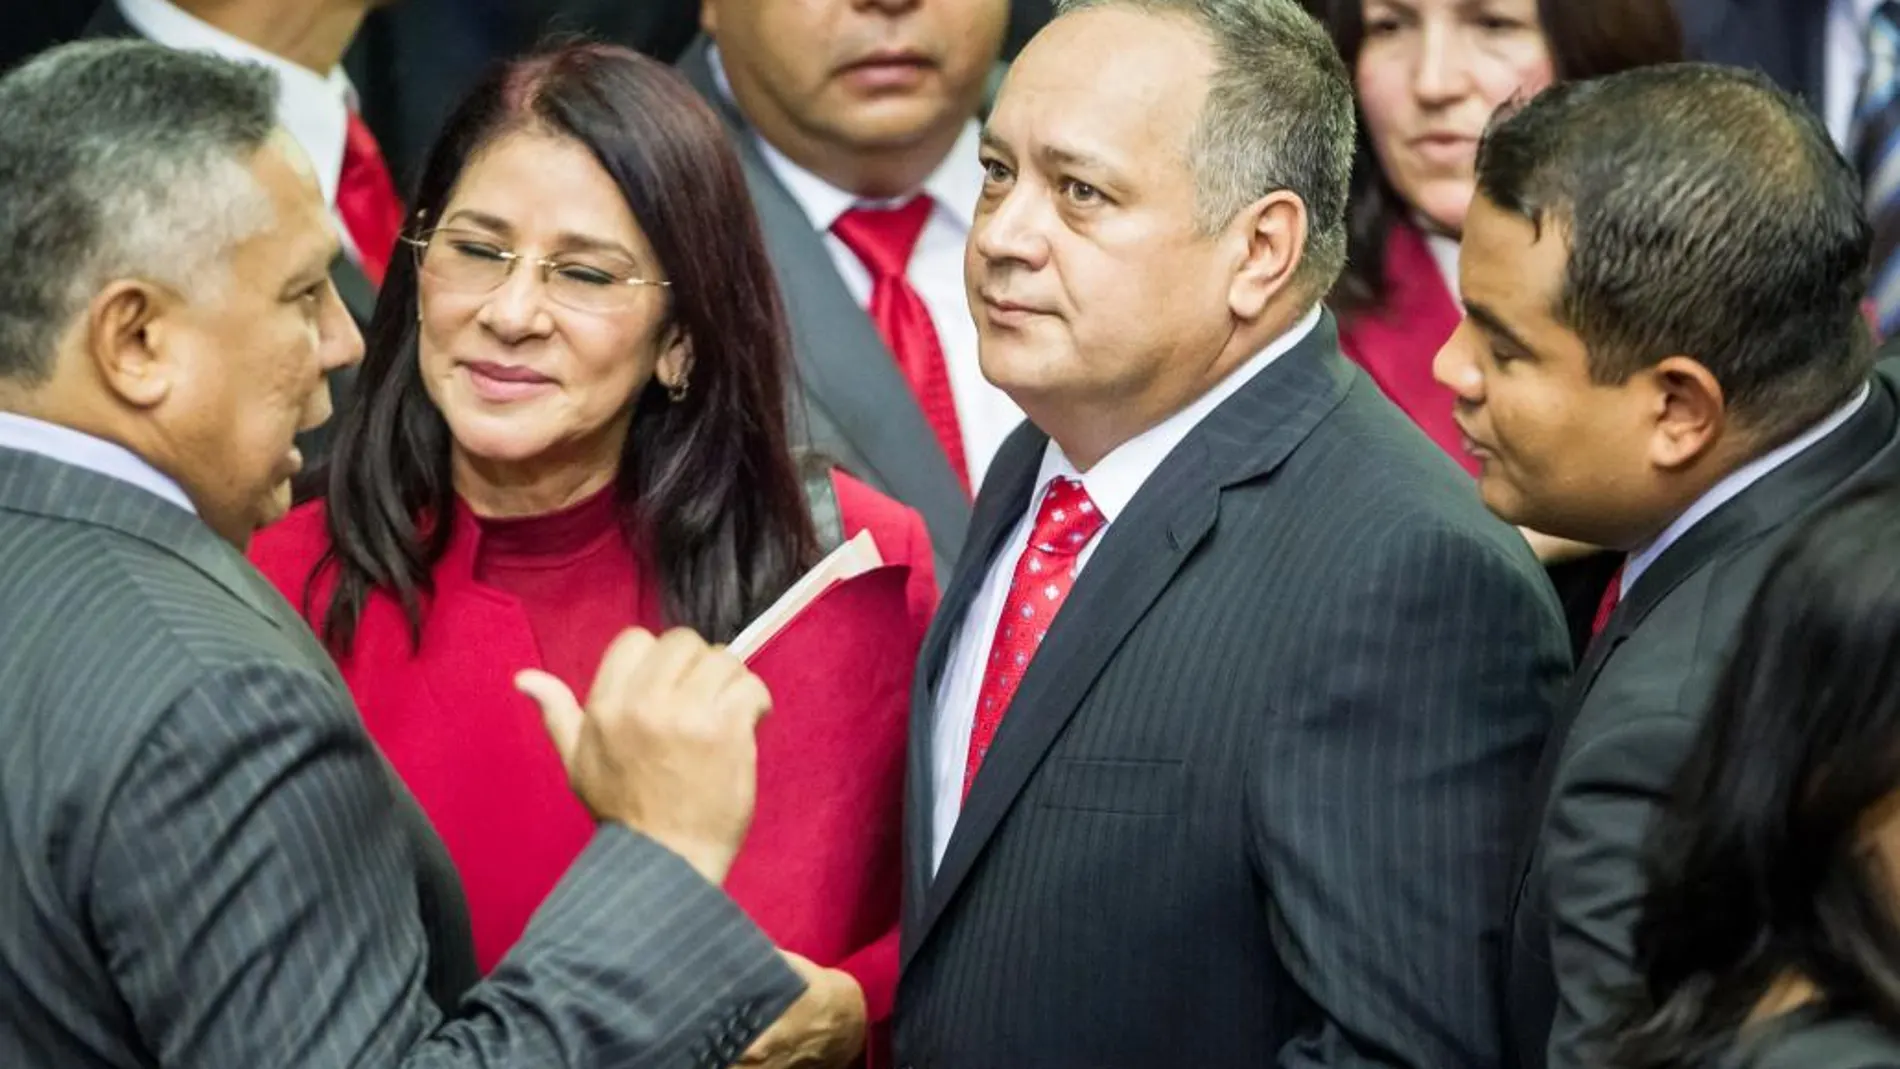 Los diputados del Partido Socialista Unido de Venezuela Pedro Carreño, Cilia Flores y Diosdado Cabello antes de abandonar la Asamblea Nacional